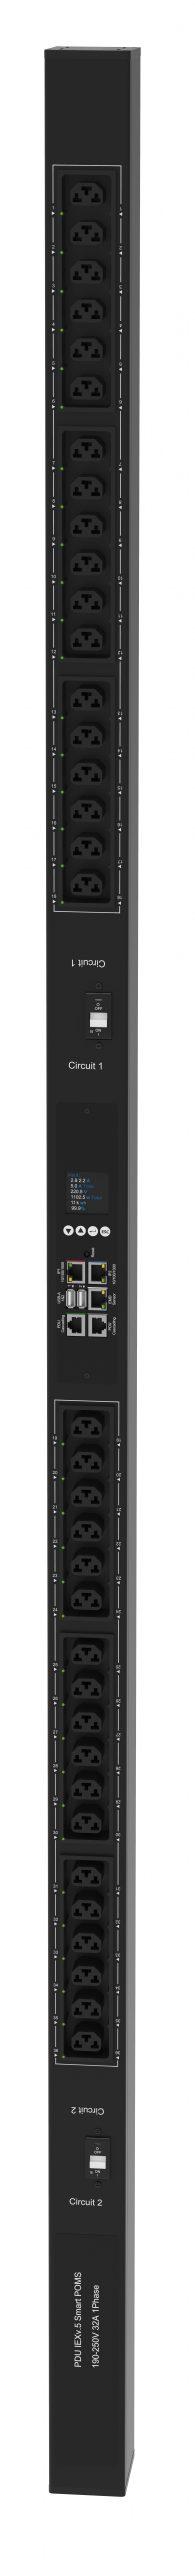 Powertek Intelligent PDU 230V, 1 fase, 32amp, låsning af power kabler C13/C19 kombination i samme udtag, 36 udtag redundant netværks mulighed,  OLED display, overvågning af  sikringer